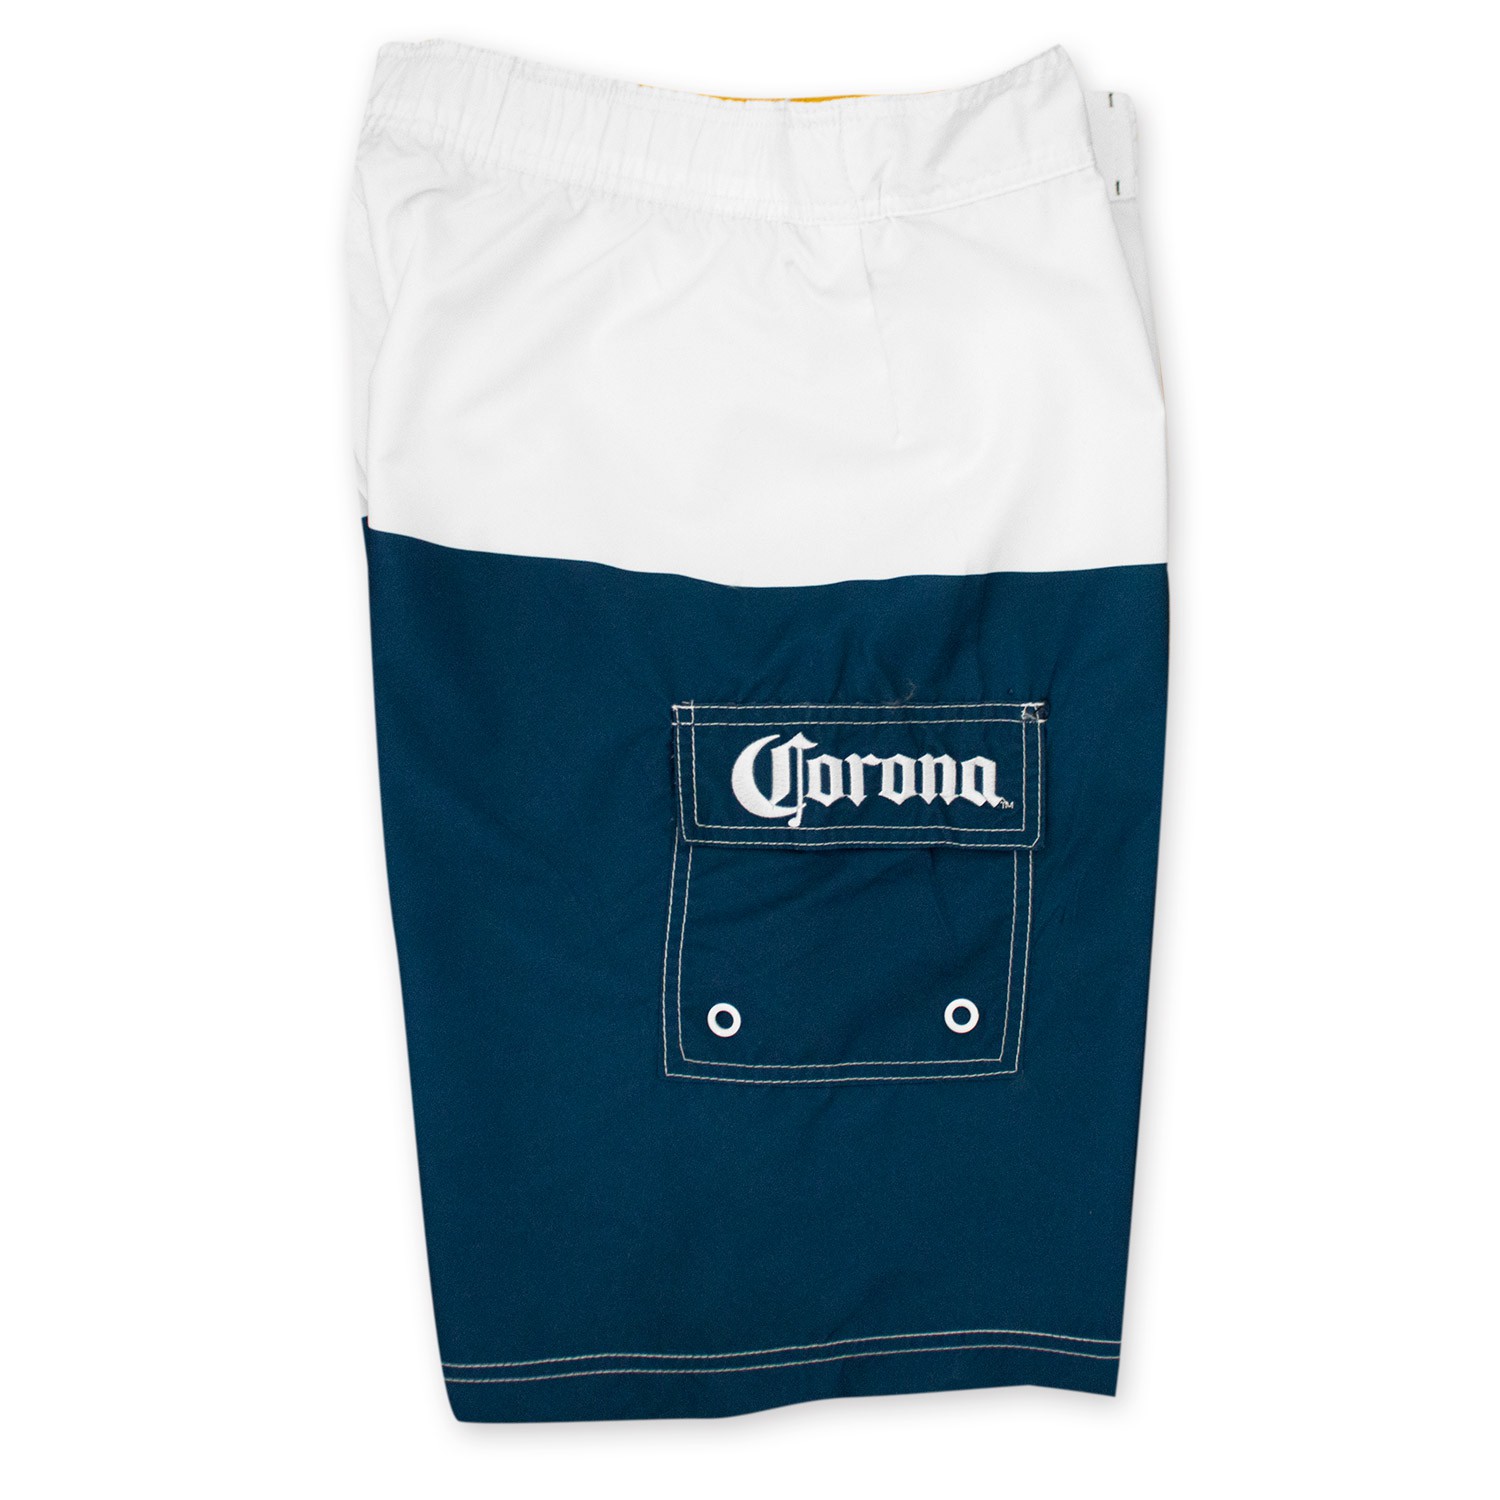 Corona Extra Label Board Shorts